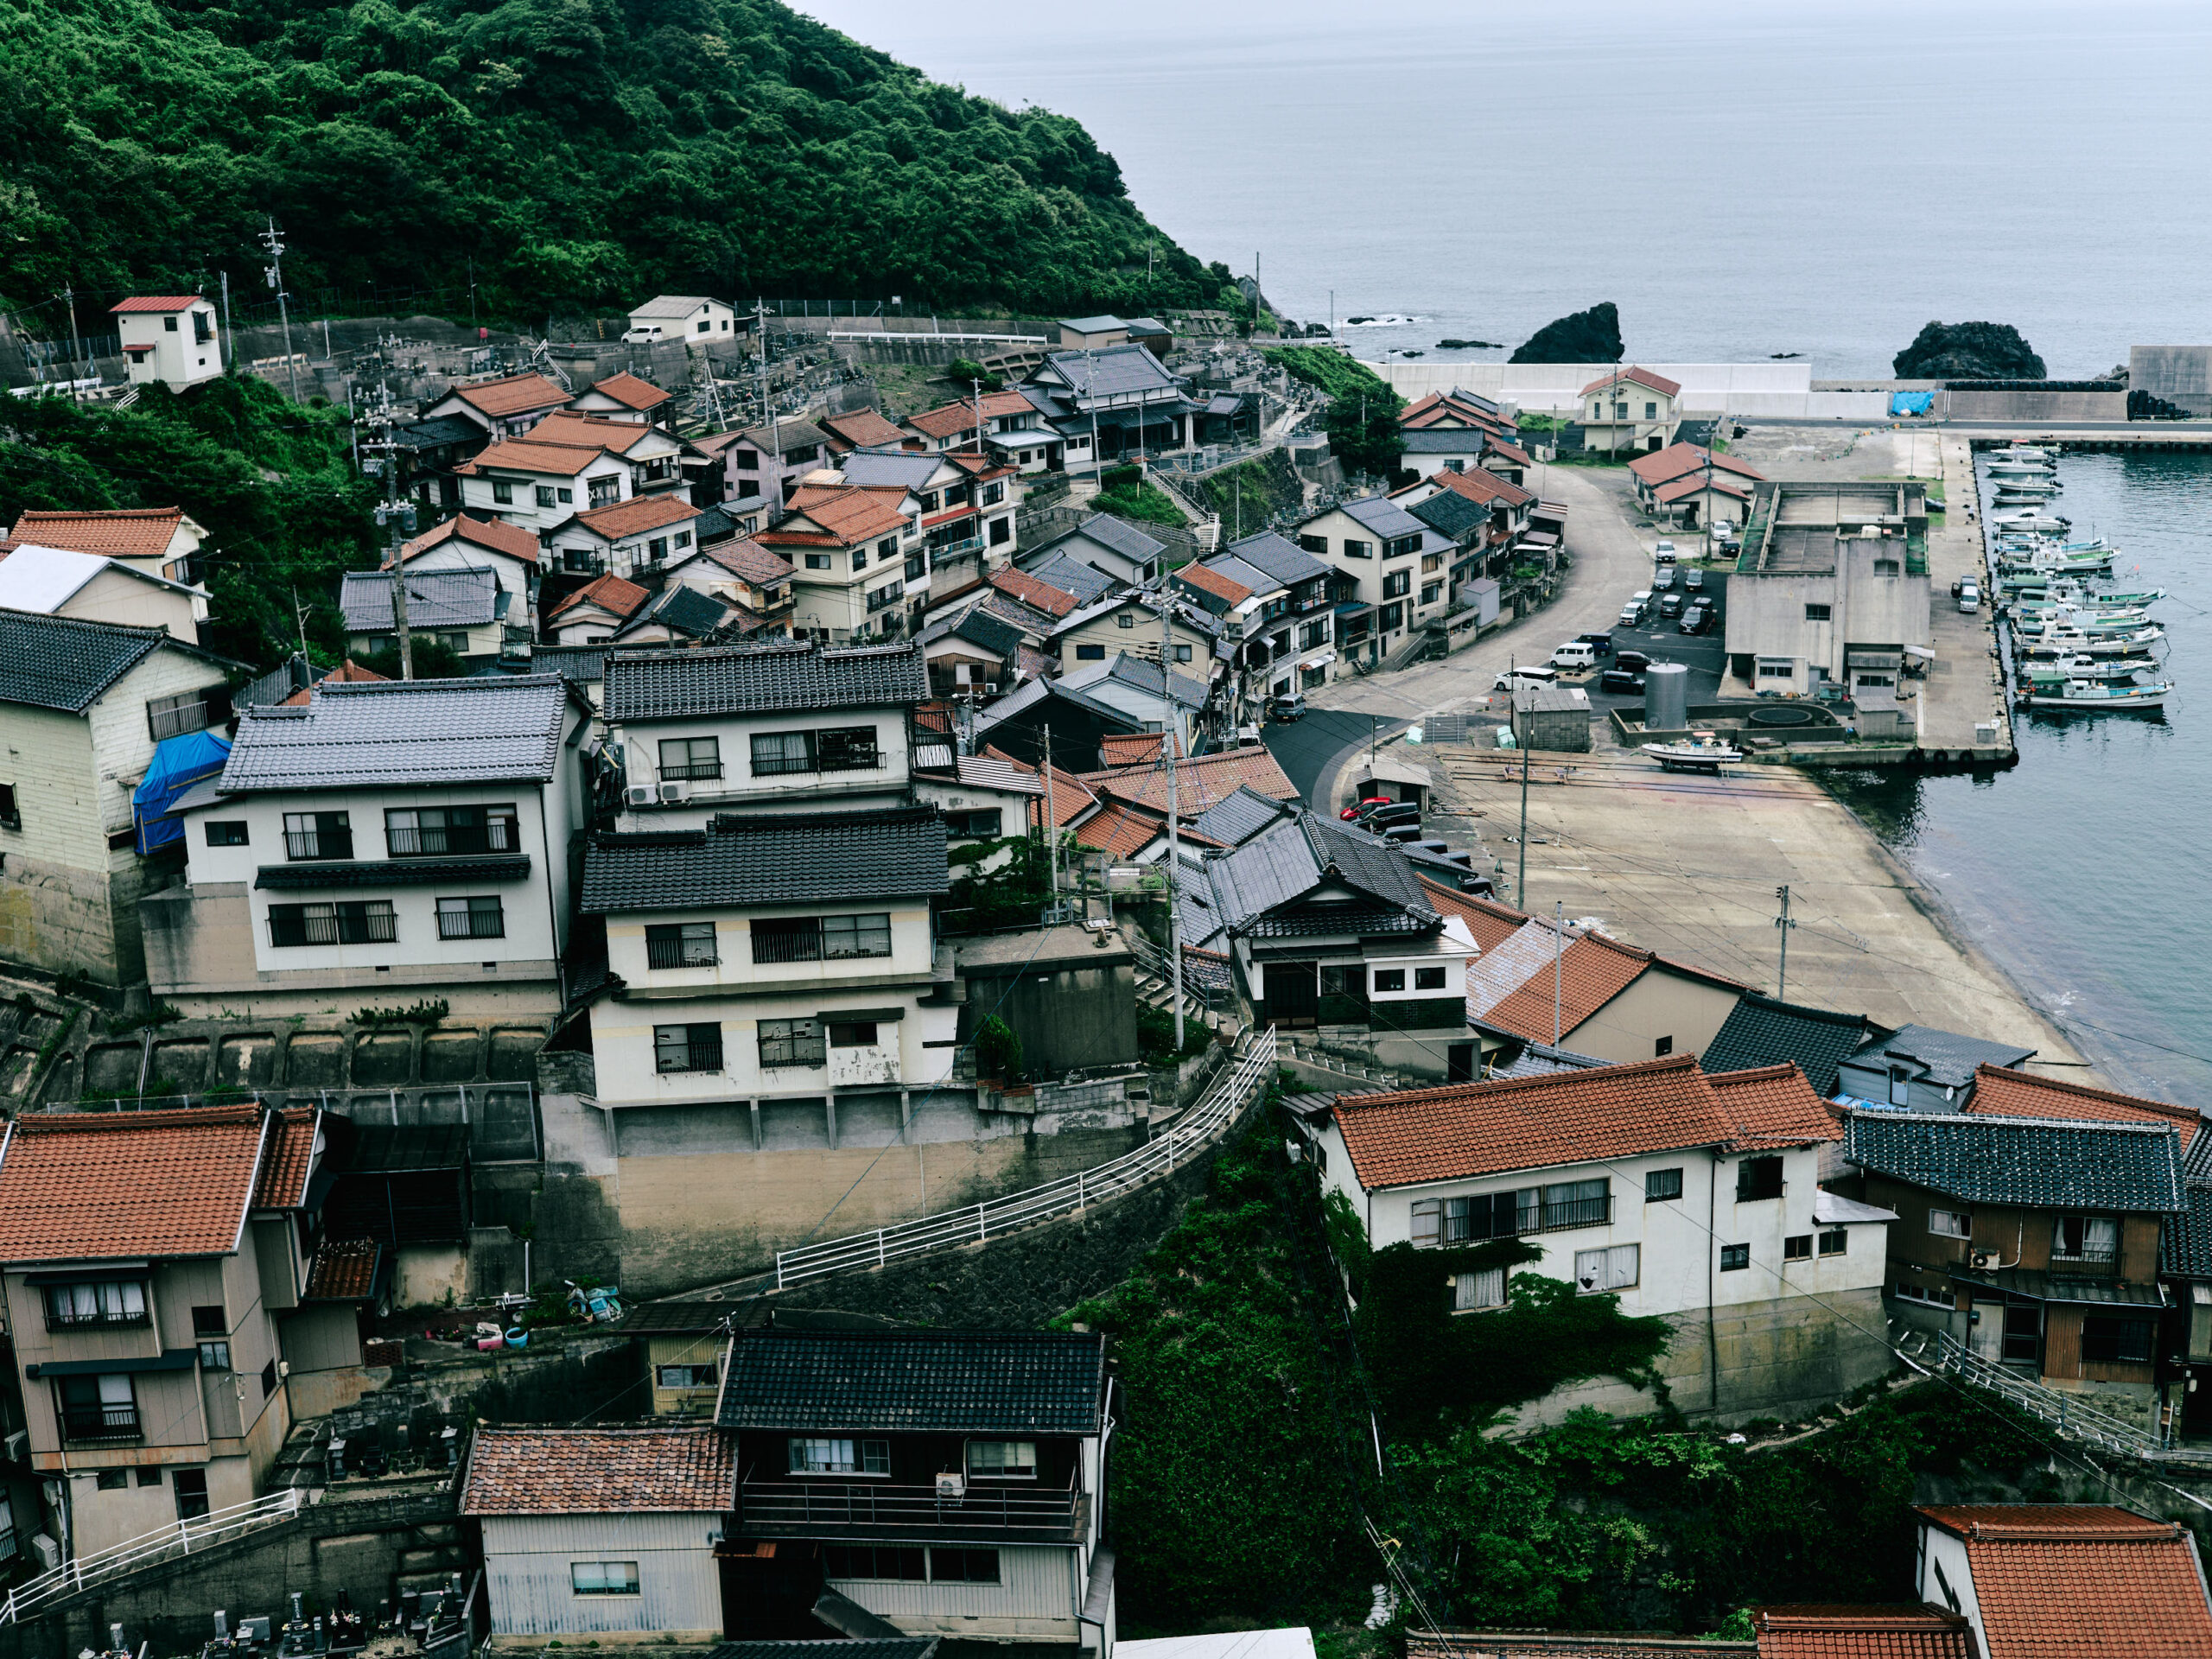 日本海に広がる小伊津の町並みにも驚かされた。